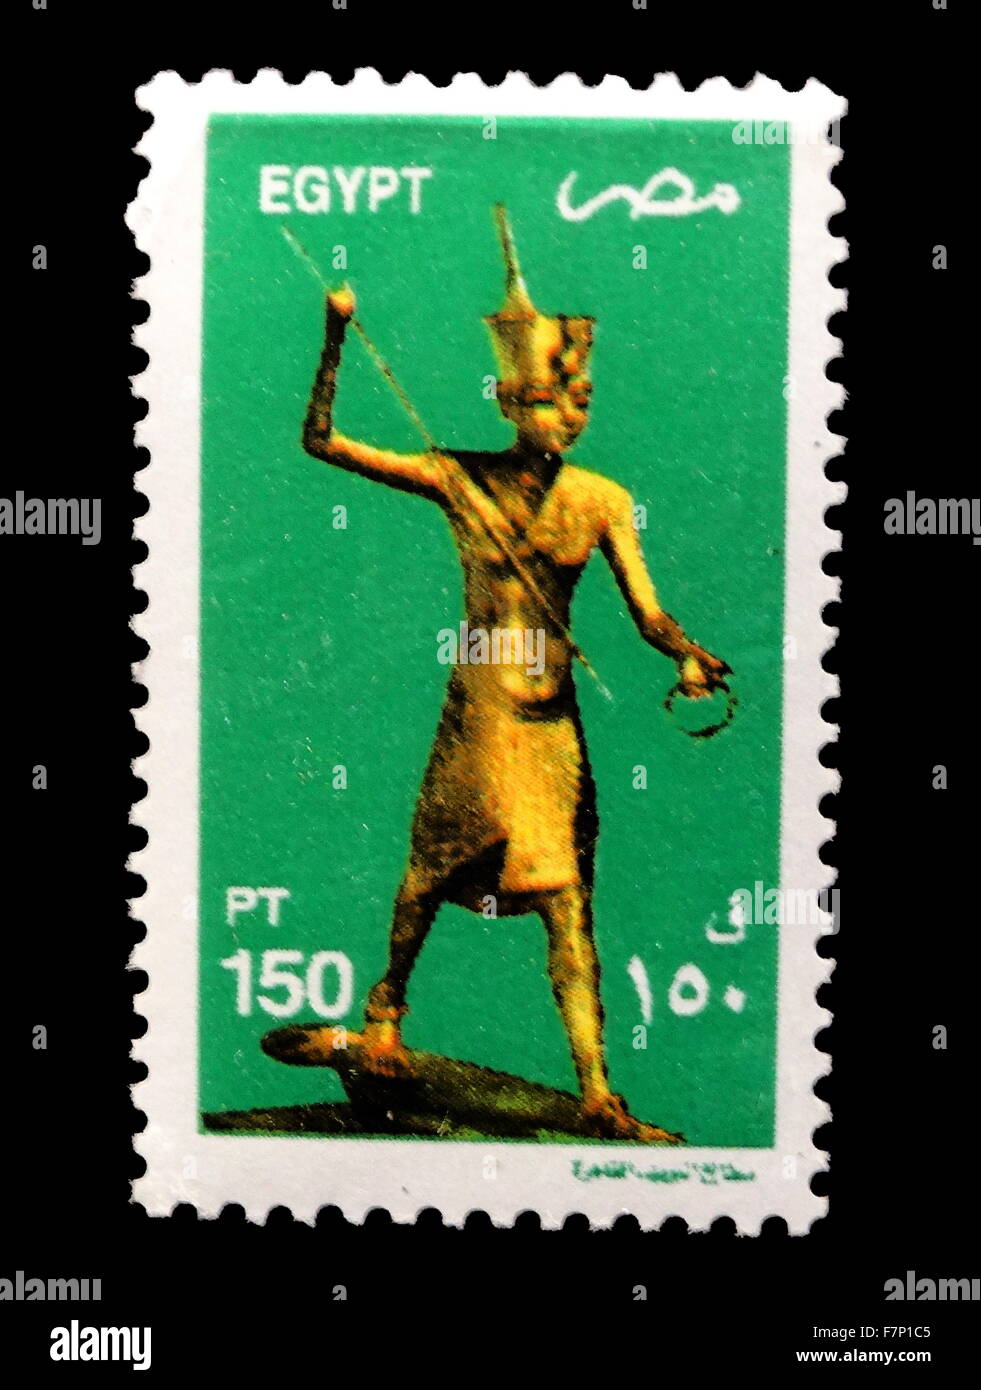 2000; Ägyptische Briefmarken mit Artefakten aus den Grab von Tutanchamun, ägyptischer Pharao der 18. Dynastie (reg. ca. 1332 – 1323 v. Chr.). Stockfoto